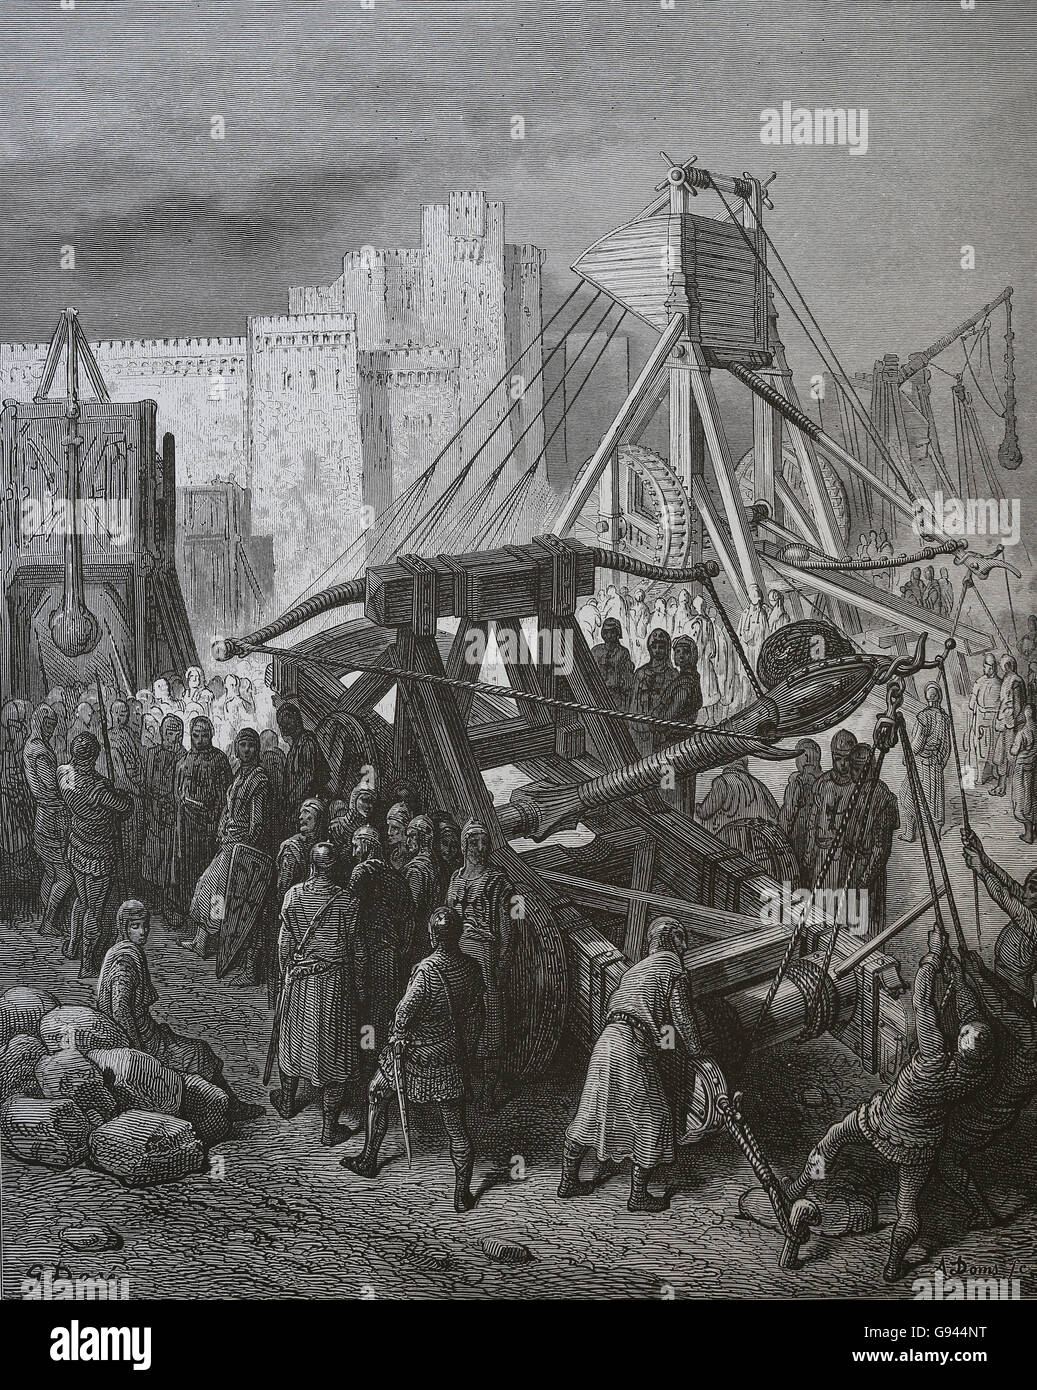 Die Kreuzzüge von Gustave Dore. 1. Kreuzzug (1096-1099). Belagerung von Jerusalem. Kupferstich, 19. Jahrhundert. Stockfoto